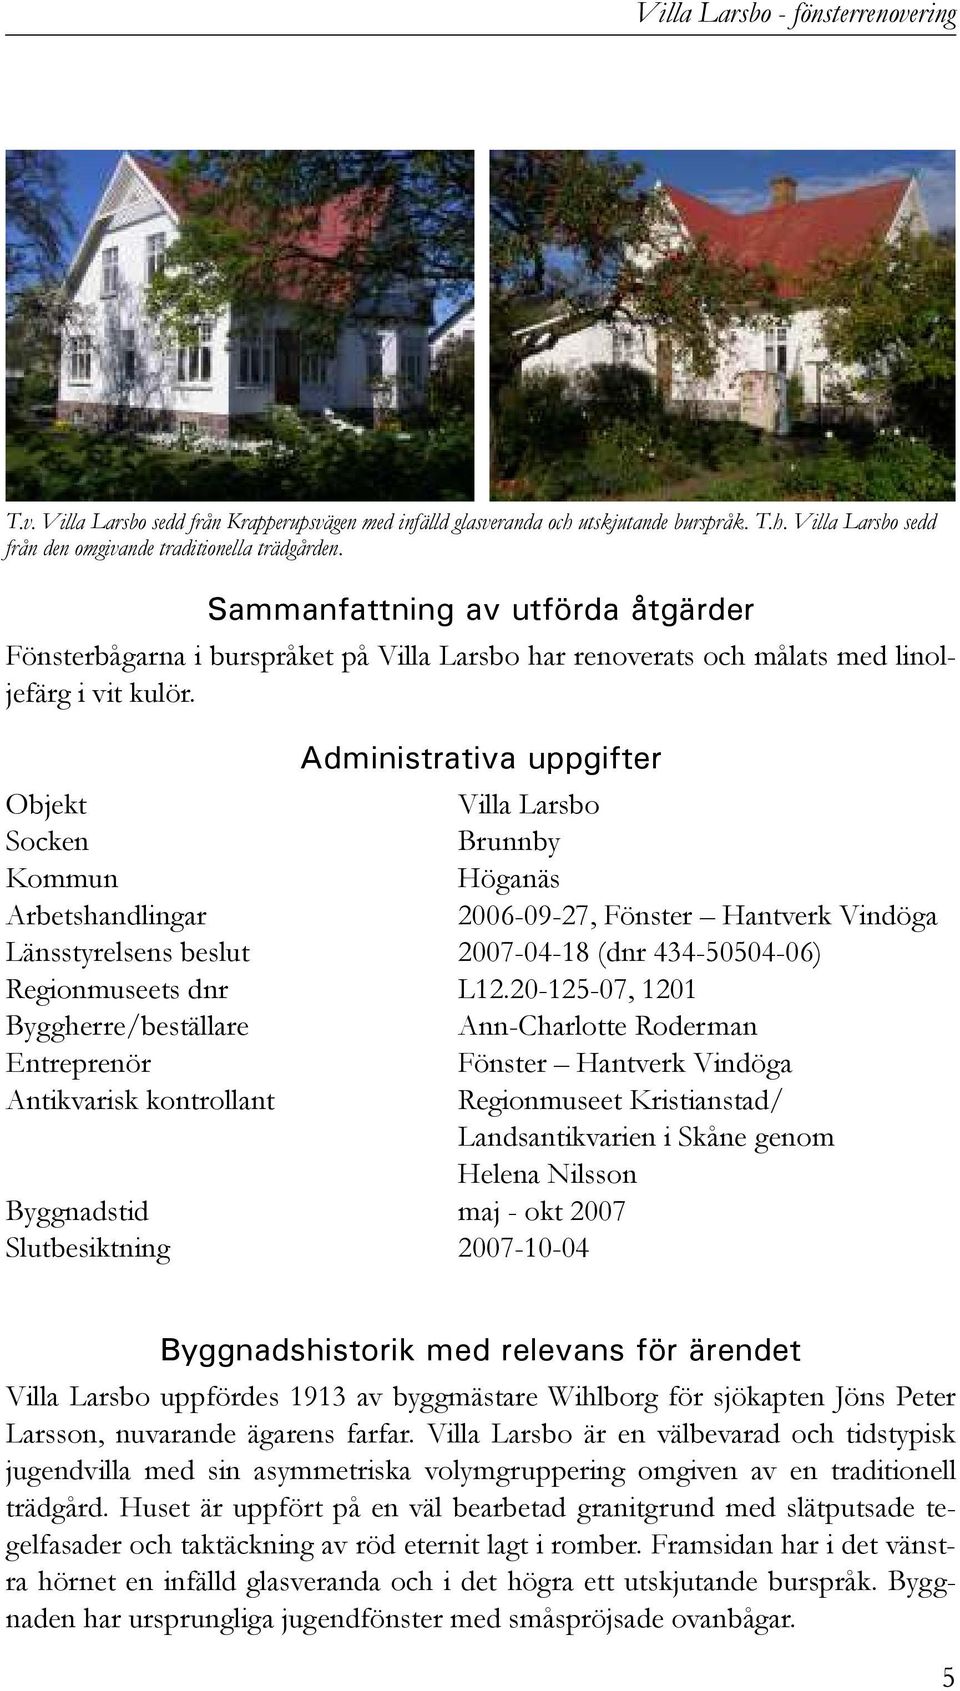 Administrativa uppgifter Objekt Villa Larsbo Socken Brunnby Kommun Höganäs Arbetshandlingar 2006-09-27, Fönster Hantverk Vindöga Länsstyrelsens beslut 2007-04-18 (dnr 434-50504-06) Regionmuseets dnr